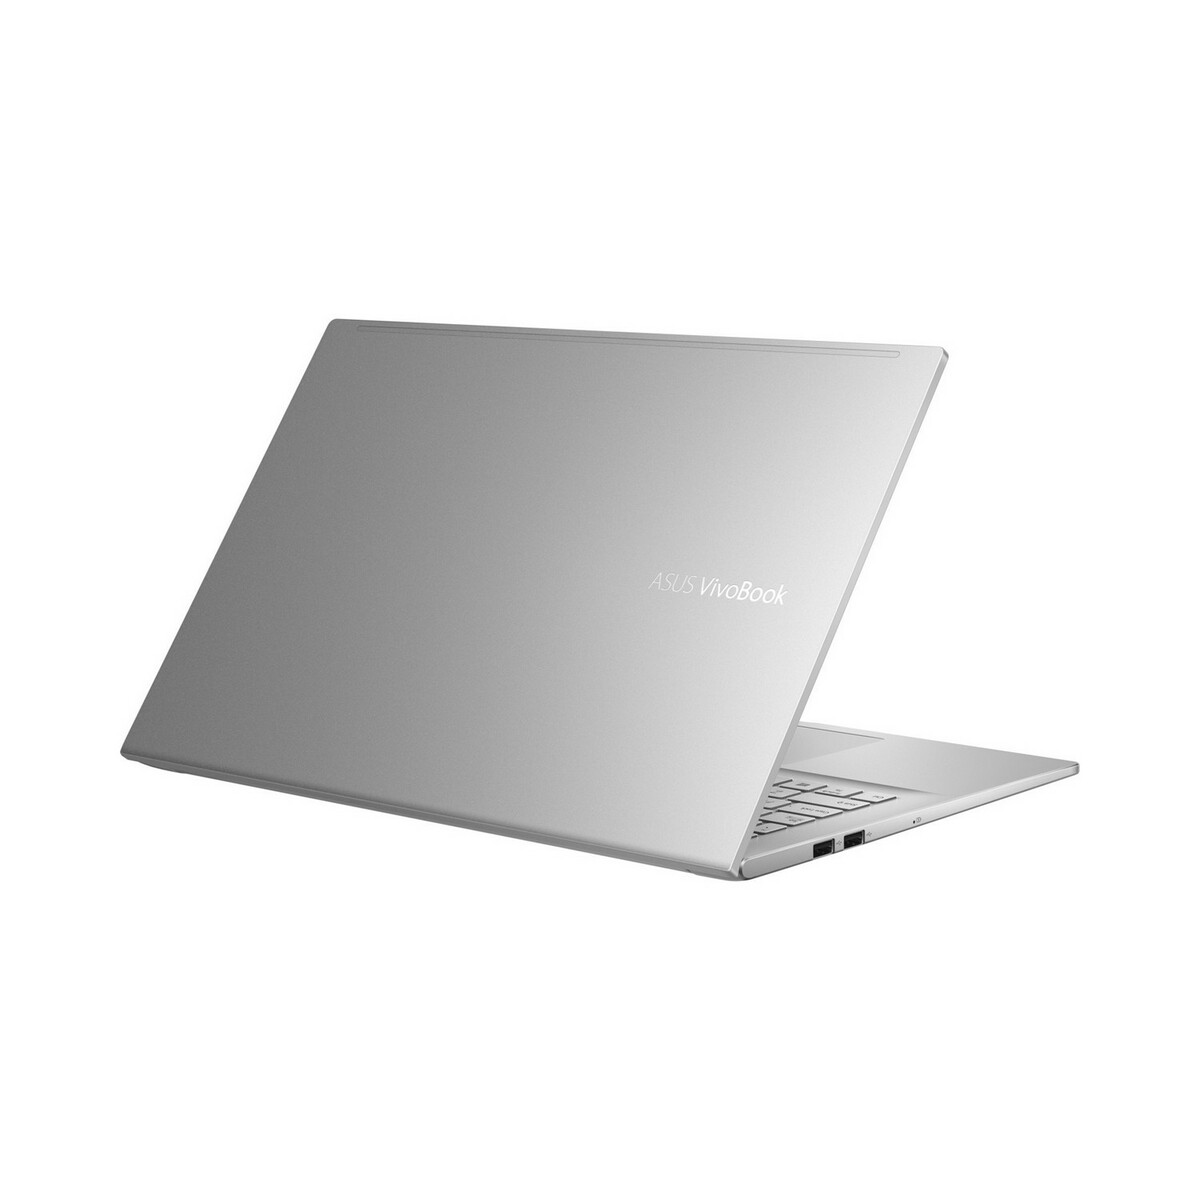 ASUS Vivobook L303TS Core i3 11th Gen 15.6" Win10 Silver